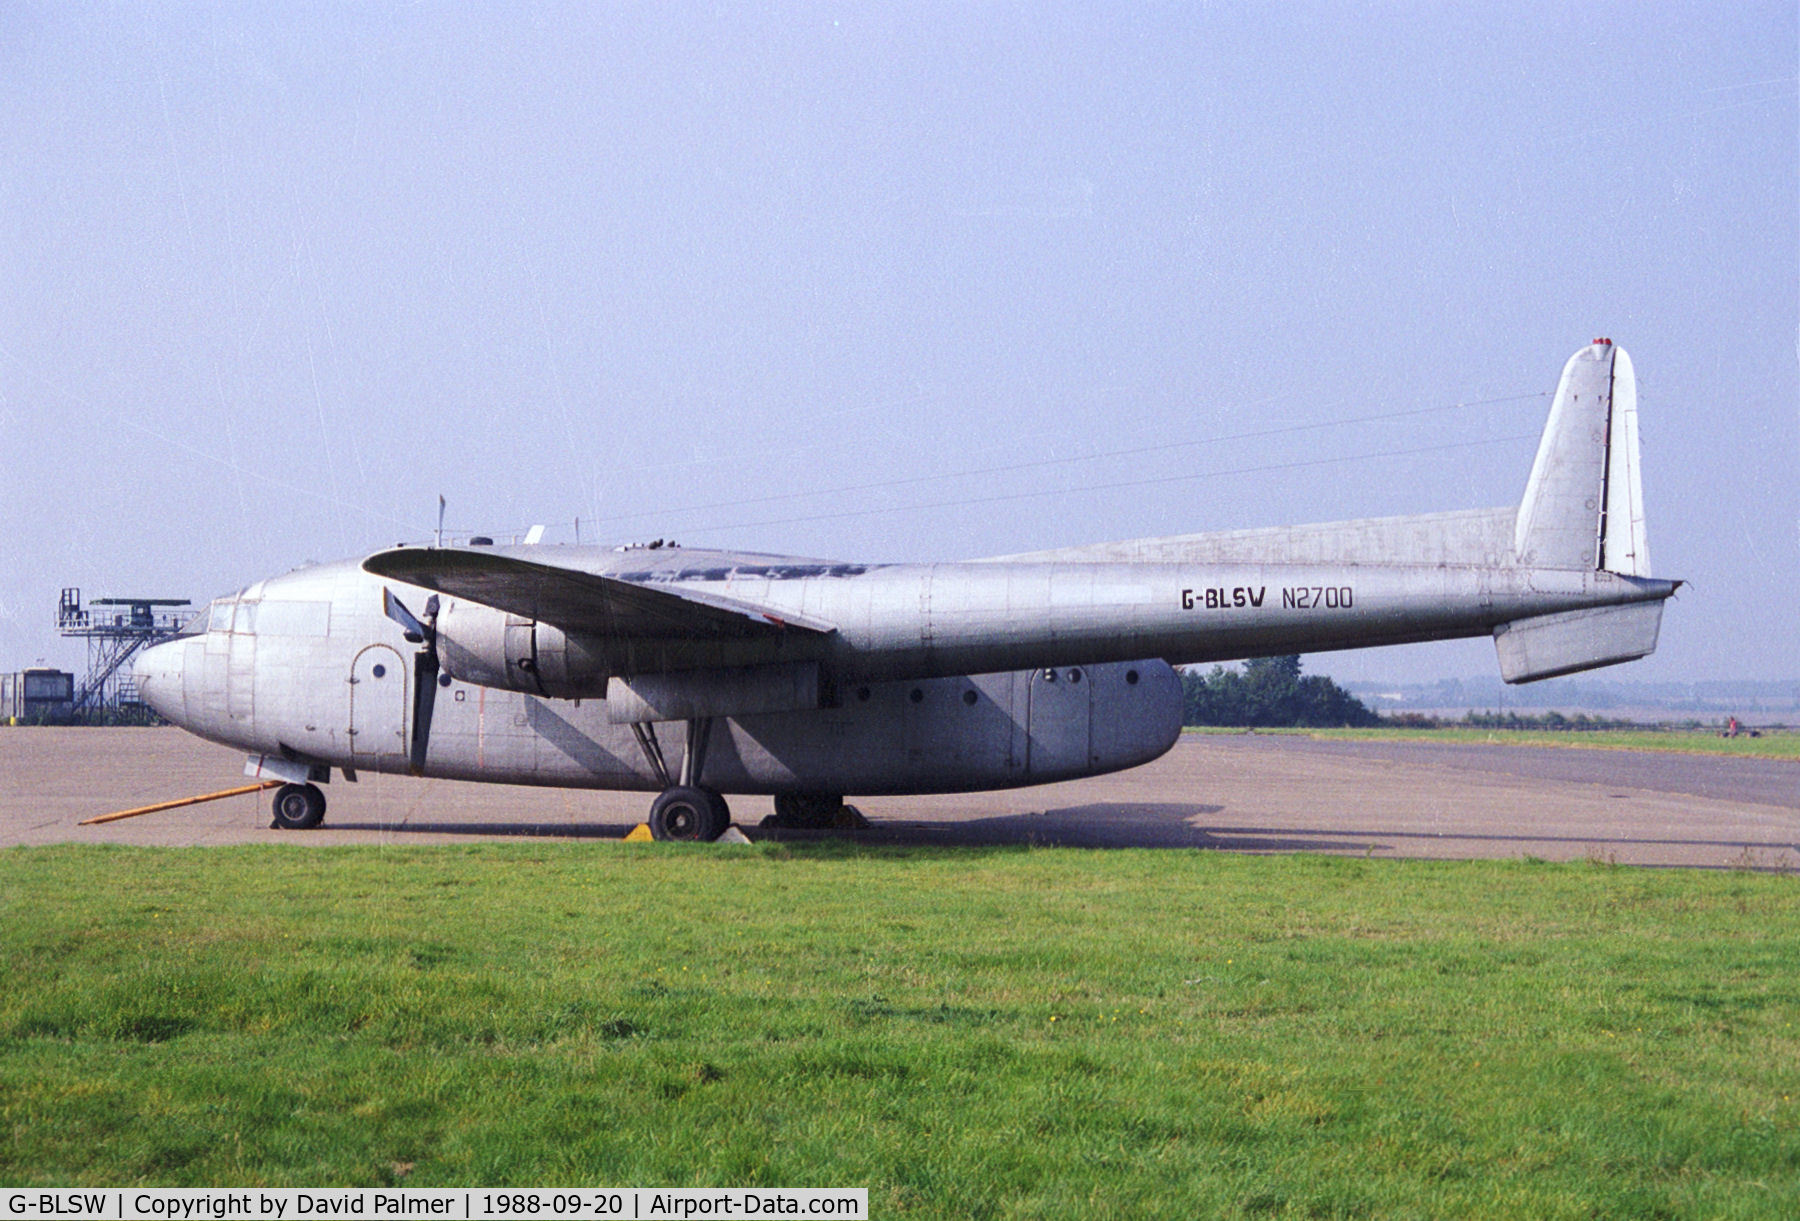 G-BLSW, 1951 Fairchild C-119G Flying Boxcar C/N 10689, G-BLSW N2700